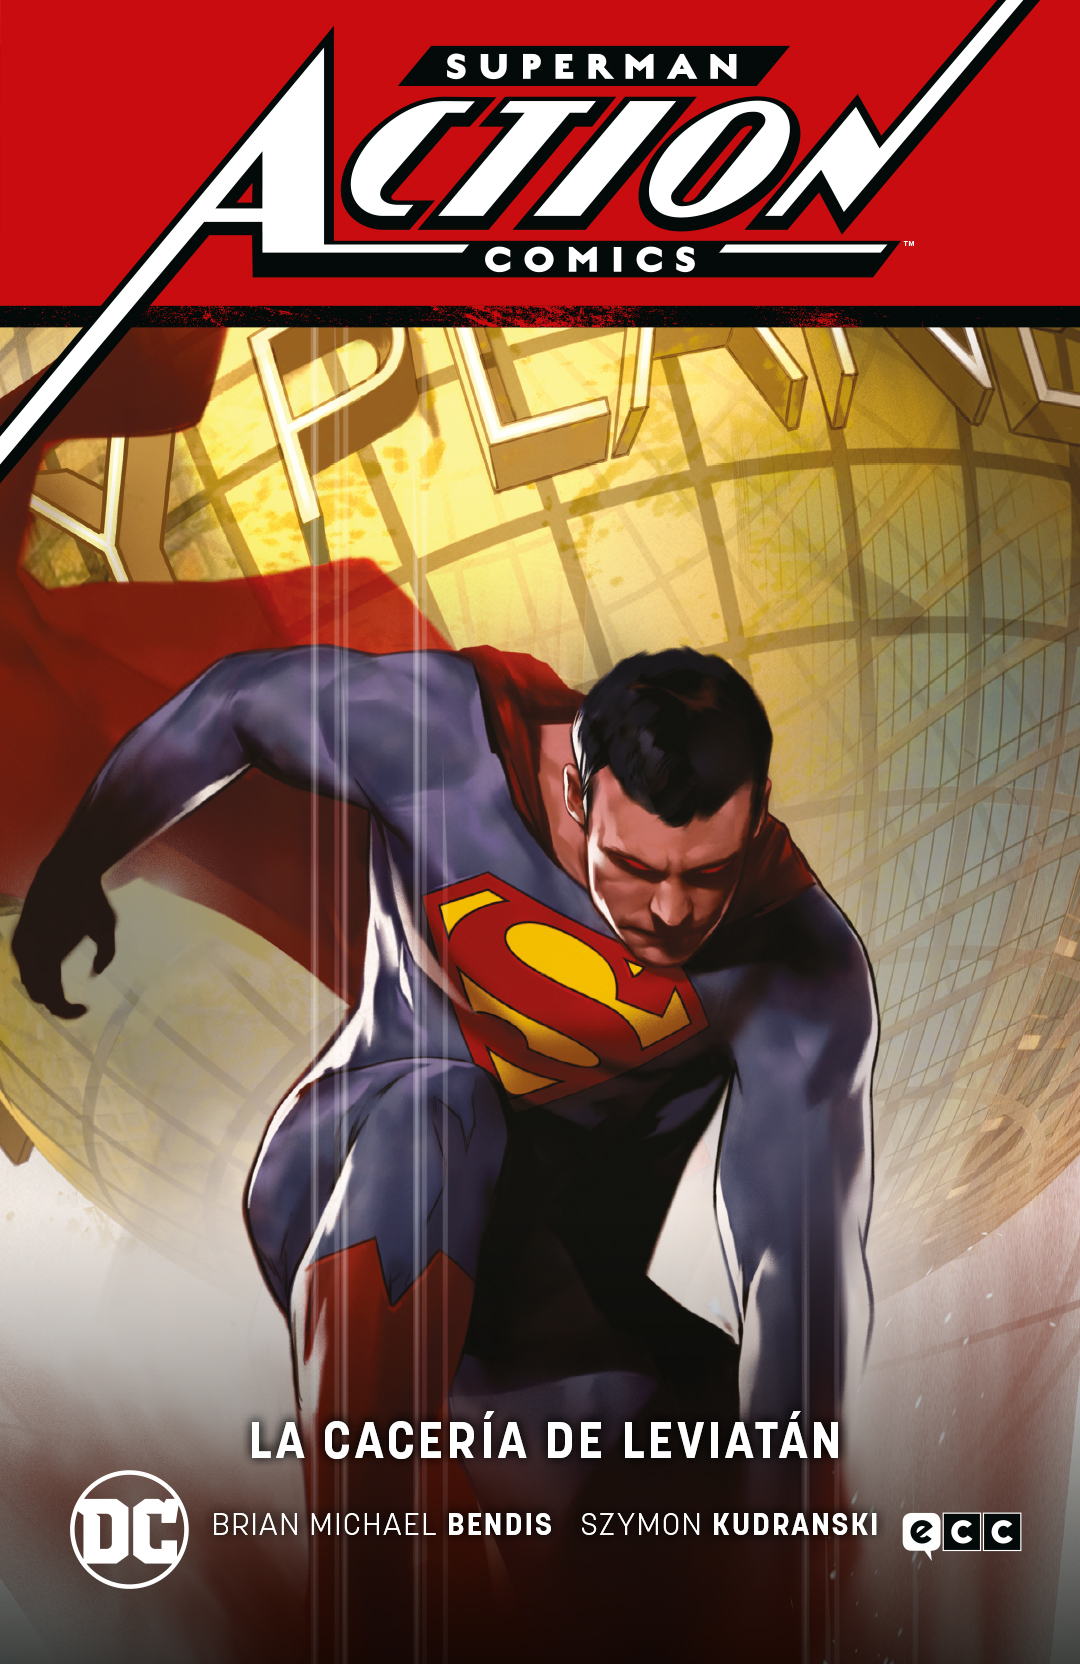 SUPERMAN: ACTION COMICS Vol.3 - LA CACERÍA DE LEVIATÁN (SUPERMAN SAGA - LEVIATÁN Pt. 3)